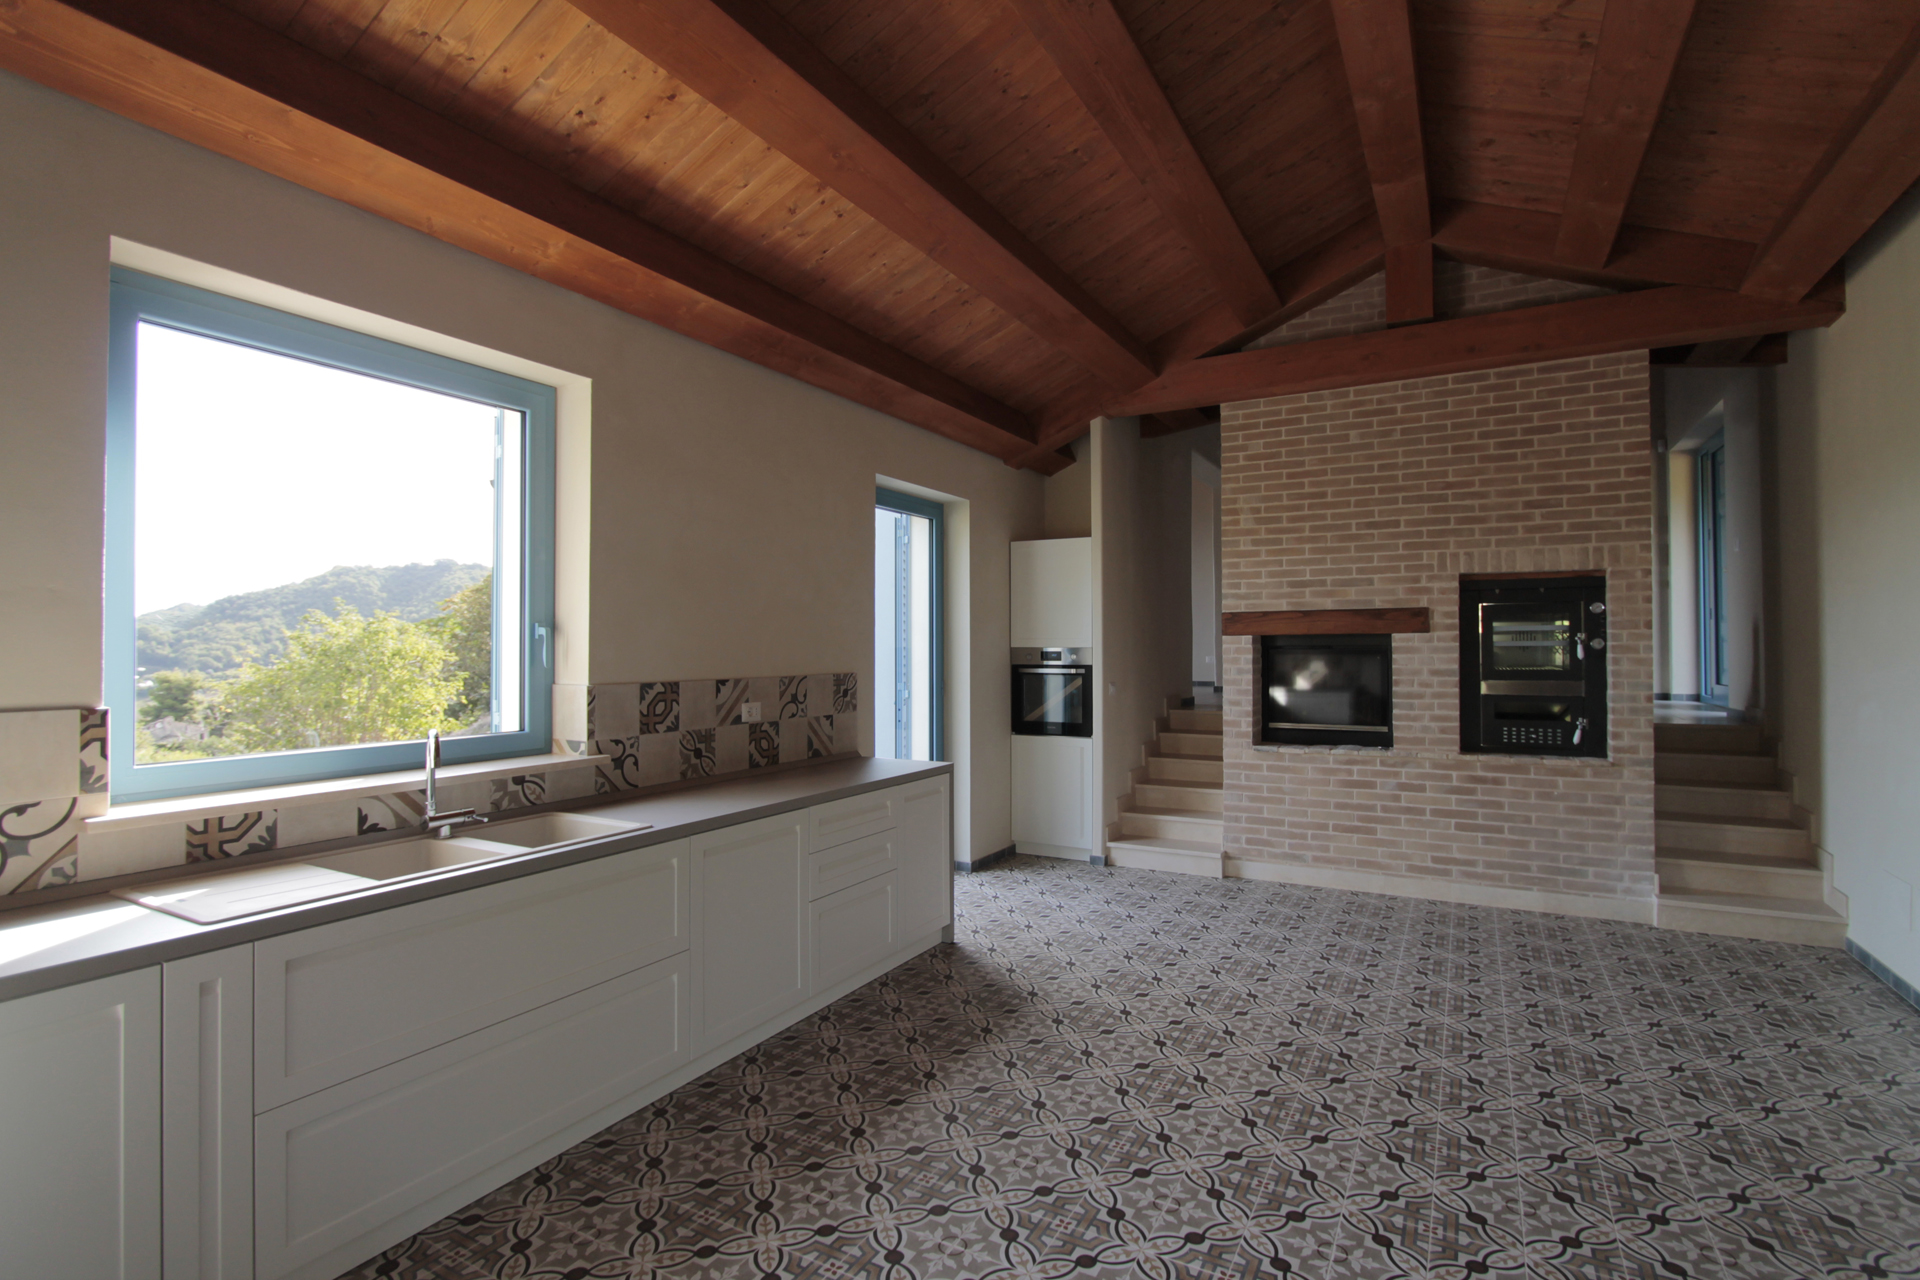 Casa di campagna - interno - cucina con tetto in legno e camino - cucina Scavolini - pavimento in gres effetto cementine